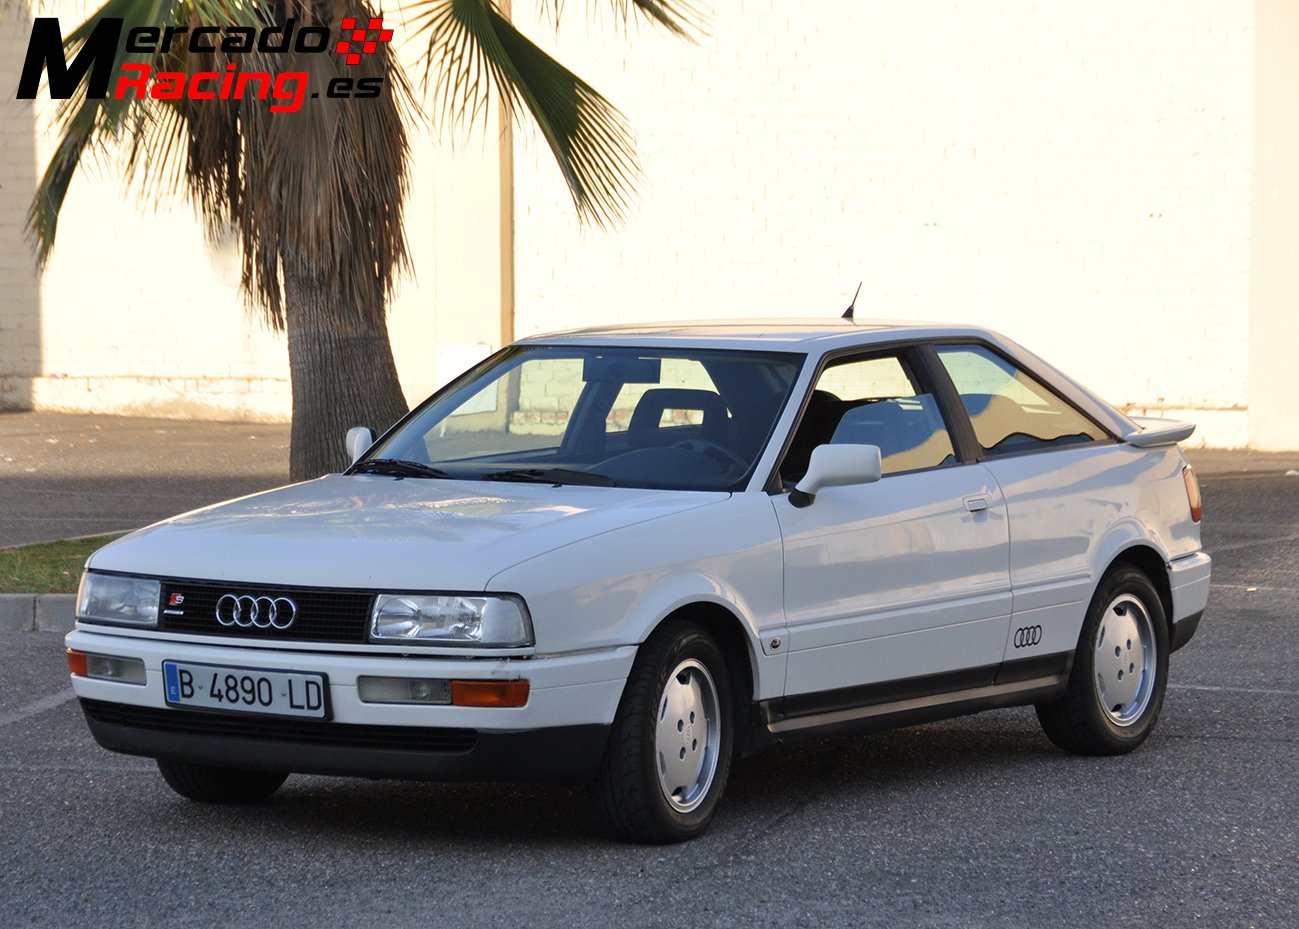 Audi coupe 2,2 136cv, 1985, acepto cambio